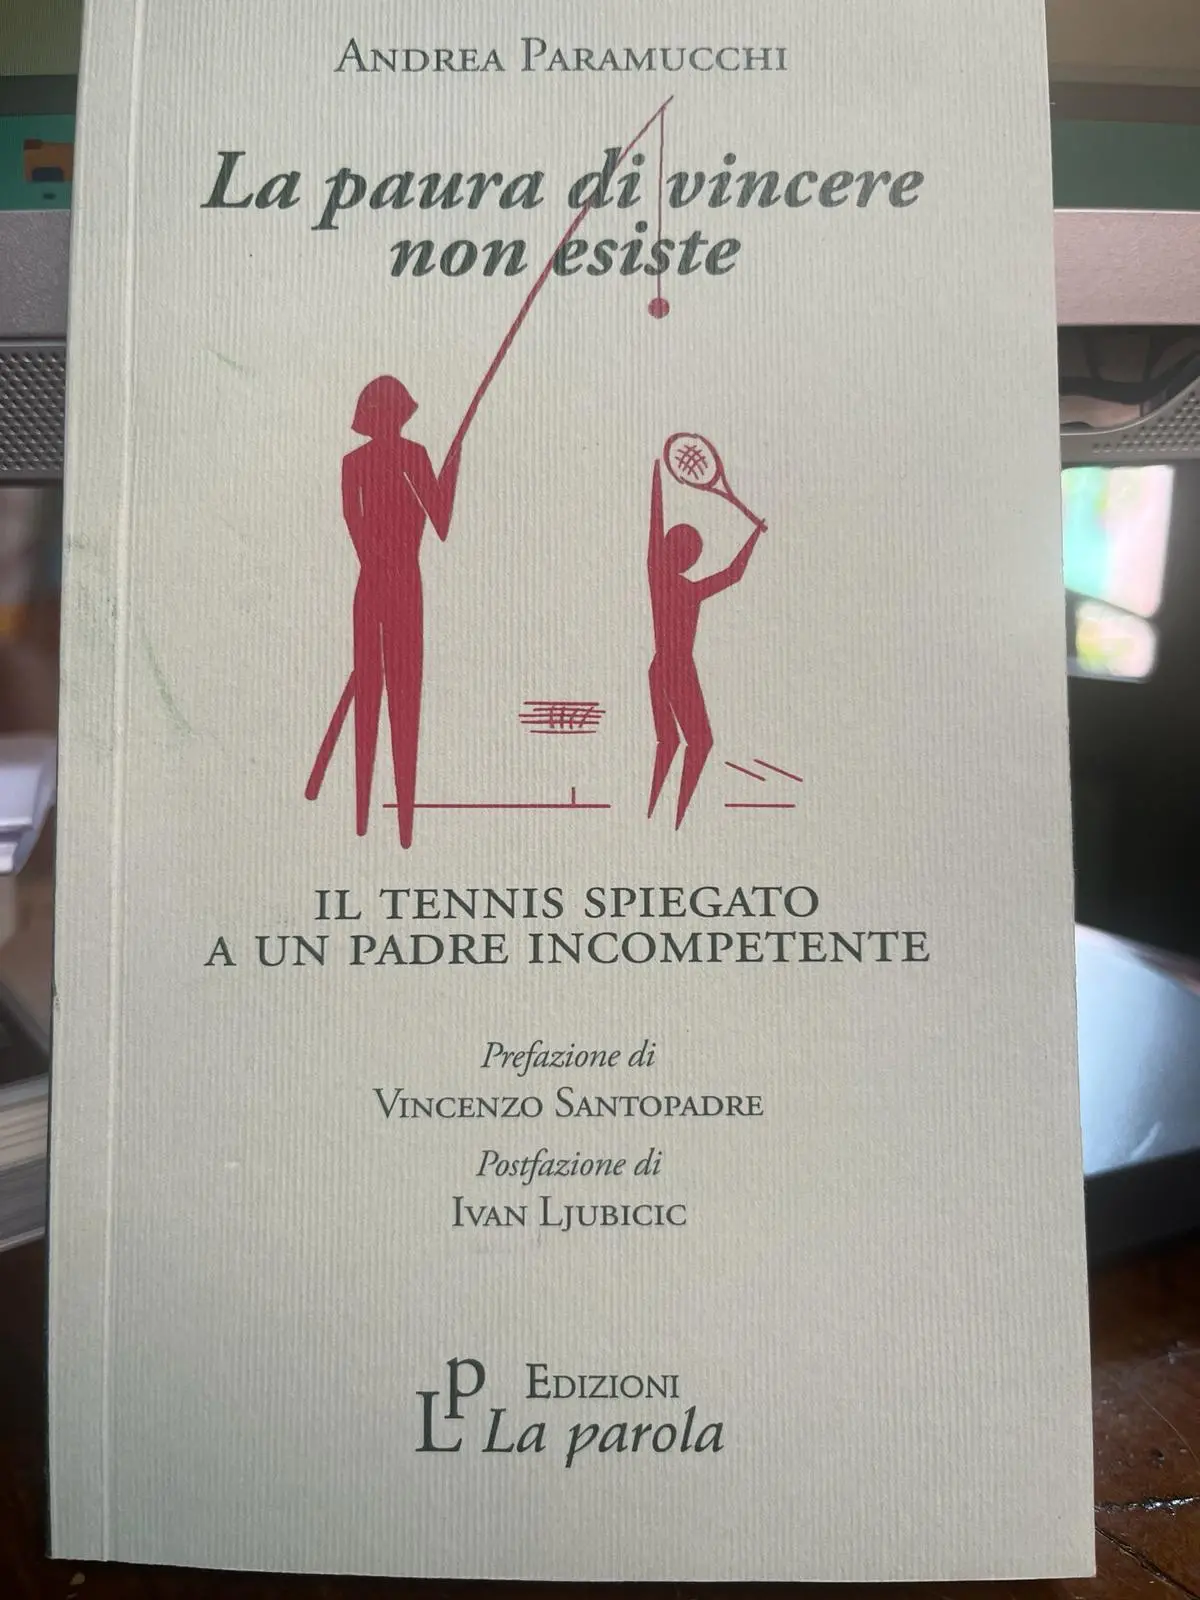 Il libro di Andrea Paramucchi, &quot;la paura di incere non esiste&quot; (foto p. c.)